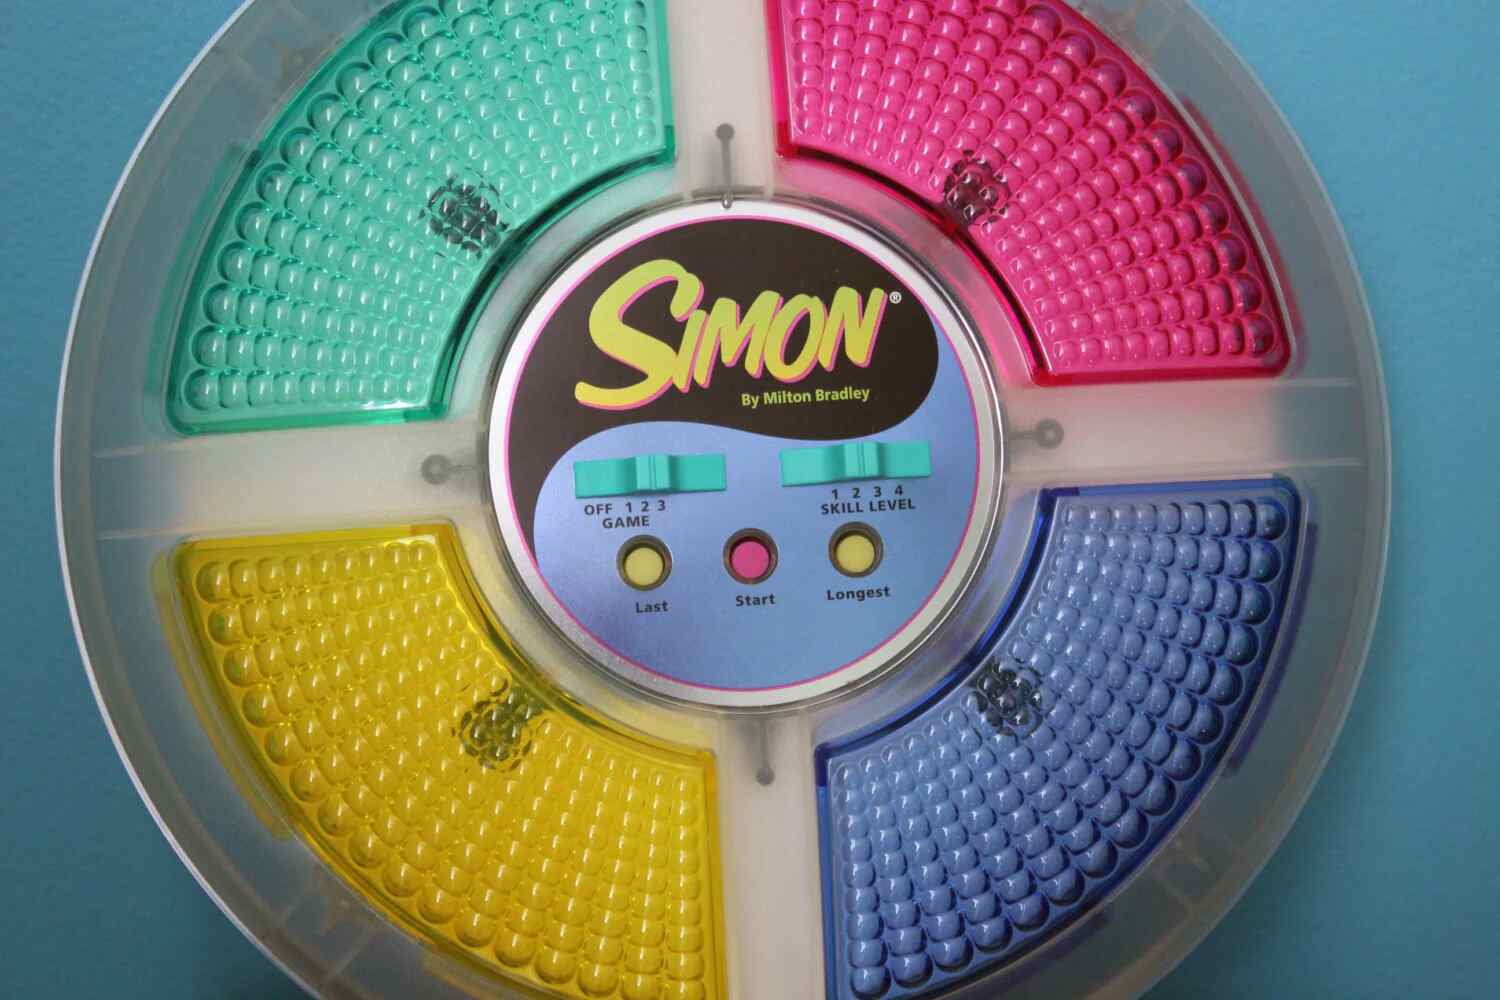 The Original Simon Toy